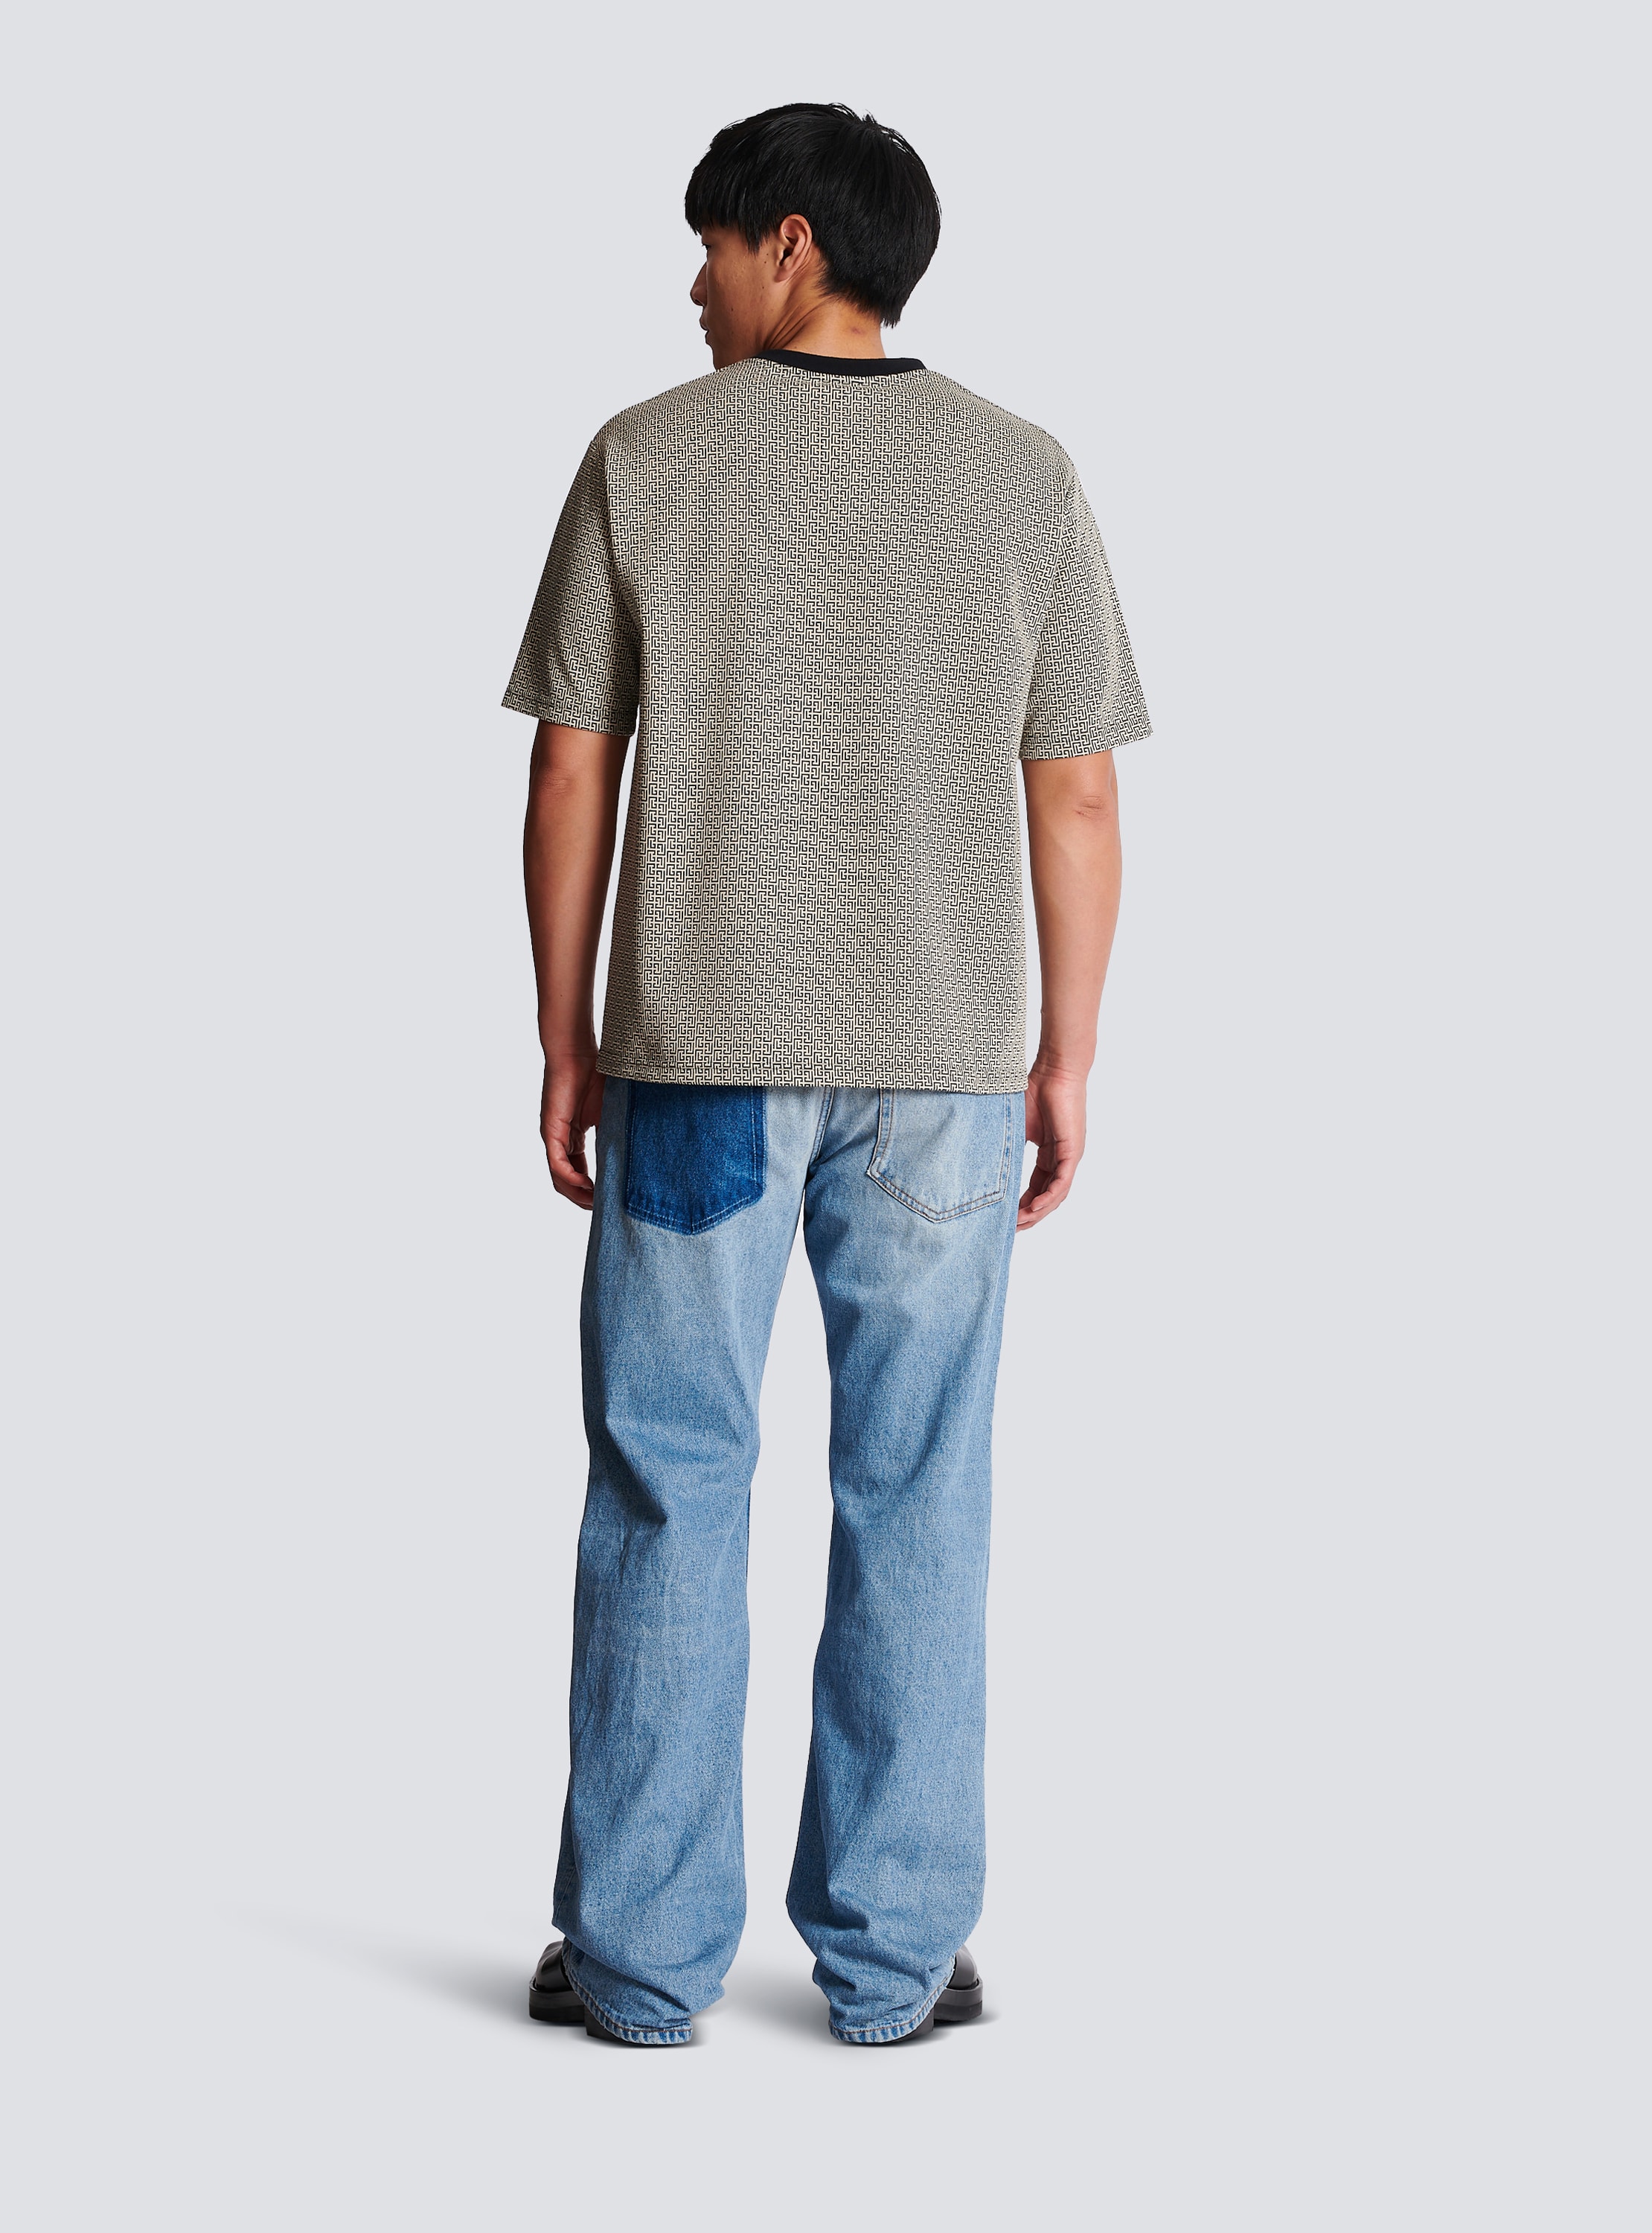 Balmain Men's Mini Monogrammed Jacquard T-Shirt